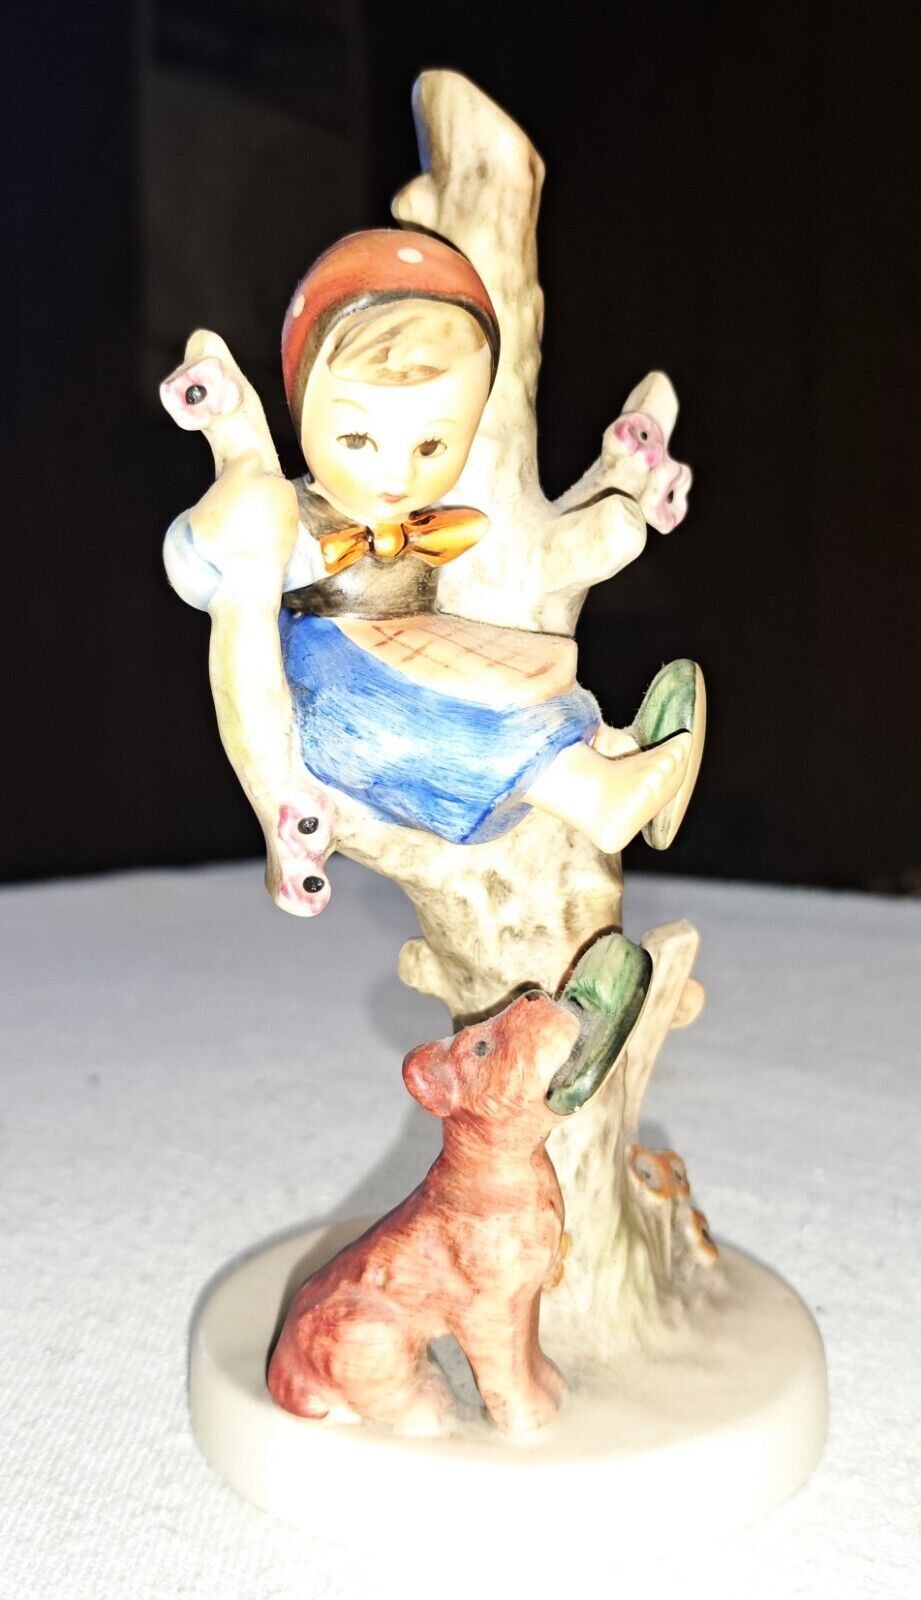 Hummel Goebel "Out of Danger" Figurine Number 56B - 6.5" H x 3.25" W - $50.35